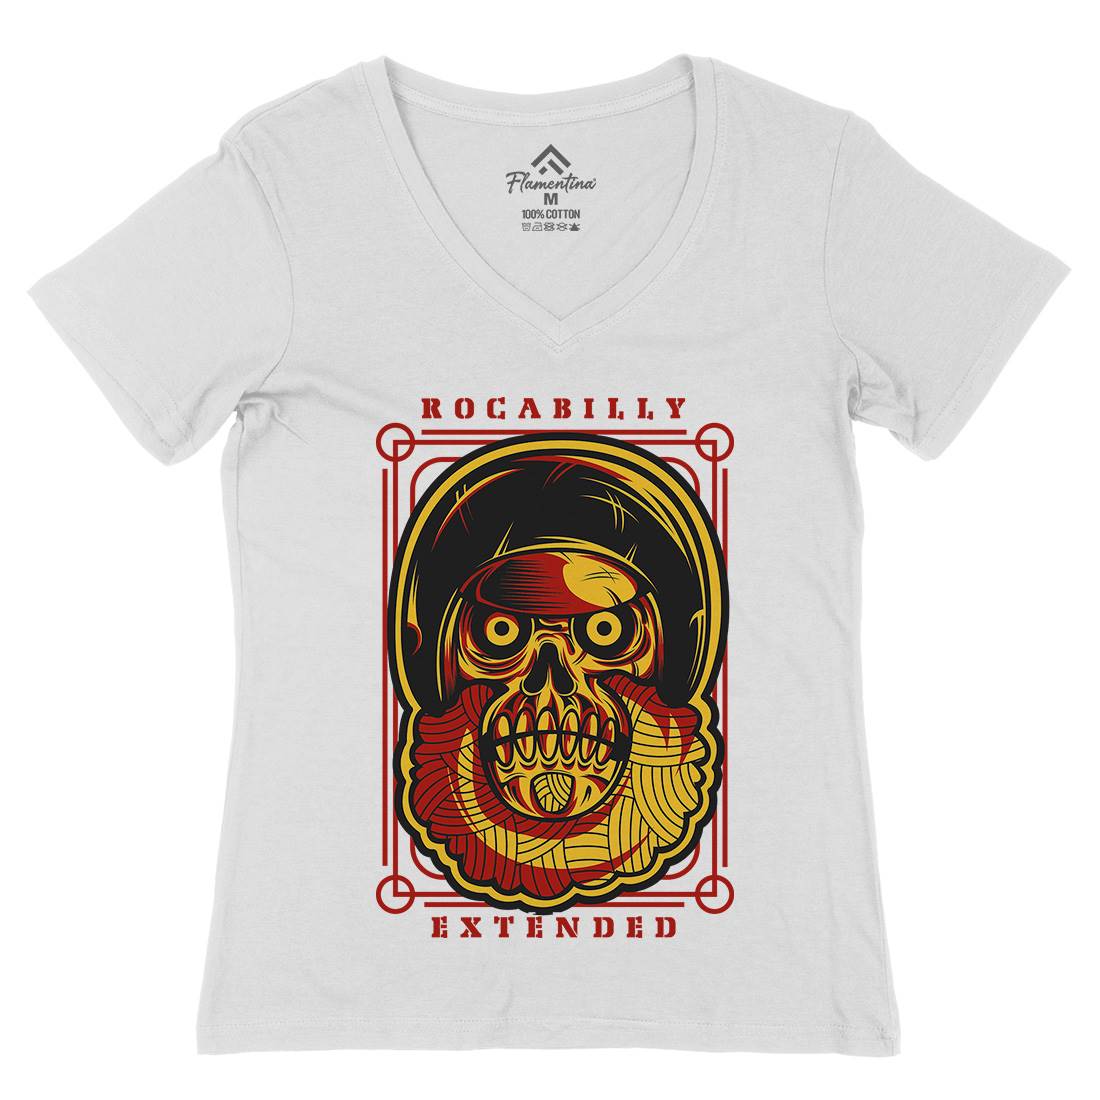 Rockabilly Womens Organic V-Neck T-Shirt Music D804